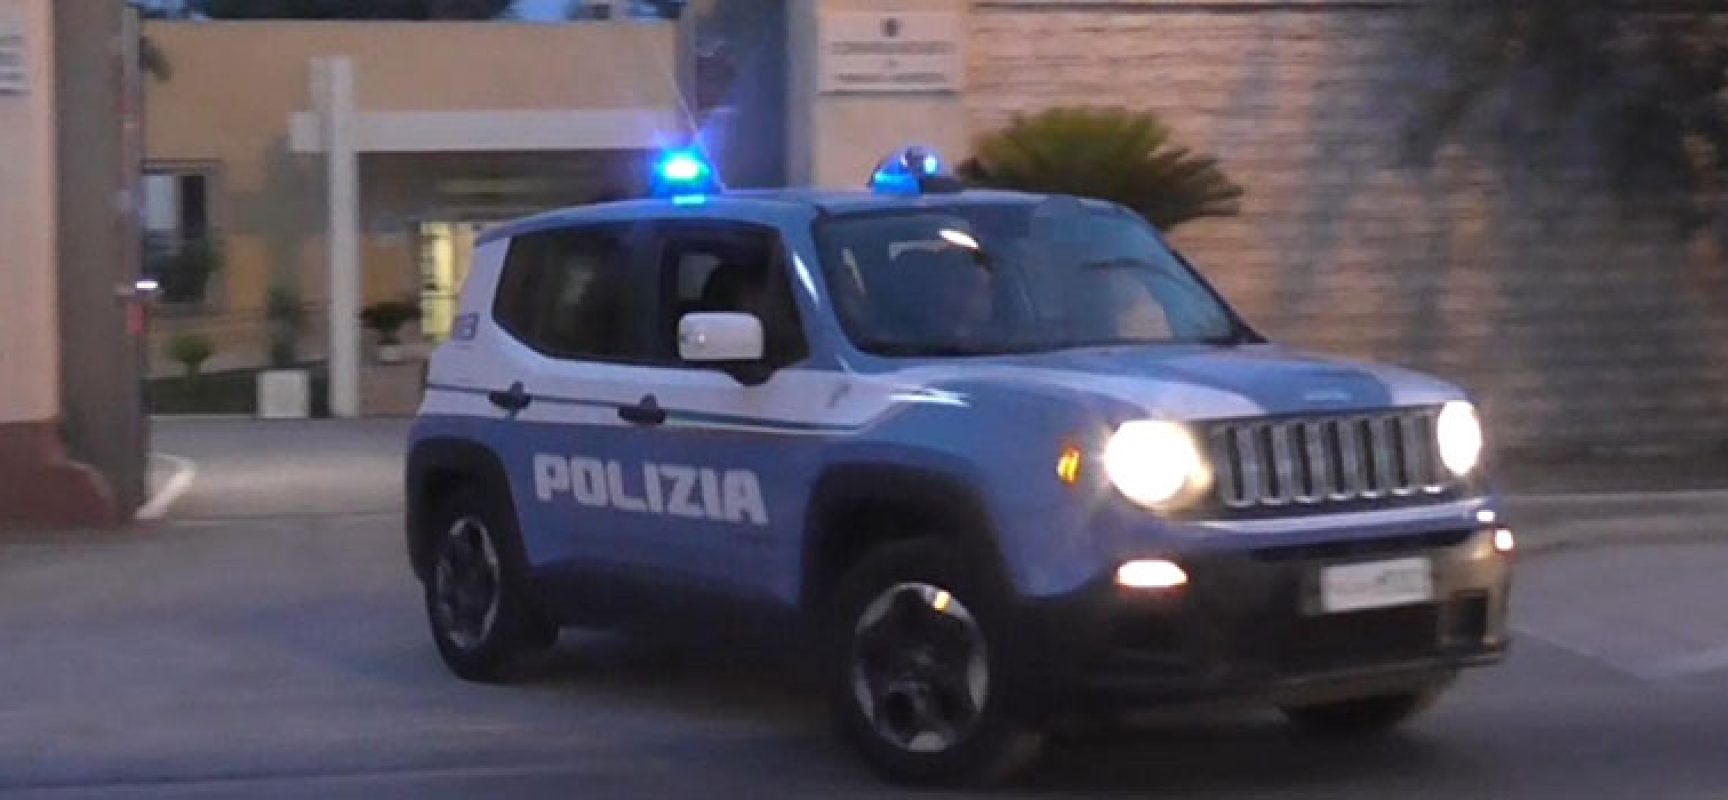 Controllo su territorio della Polizia di Stato, servizi intensificati a Trani e Bisceglie